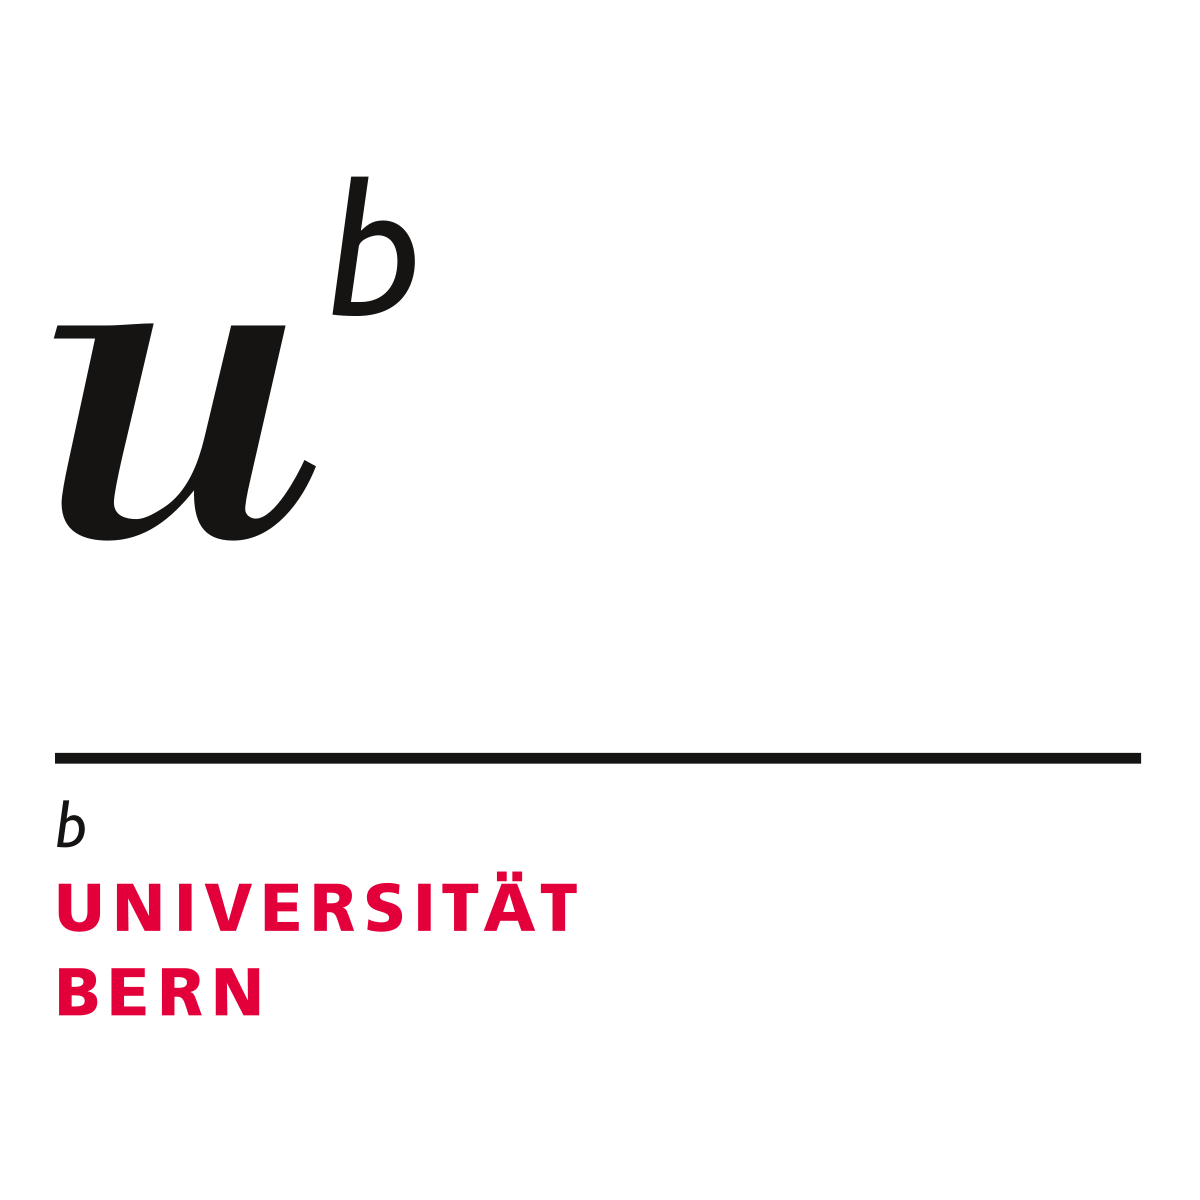 University of Bern joins ENLIGHT